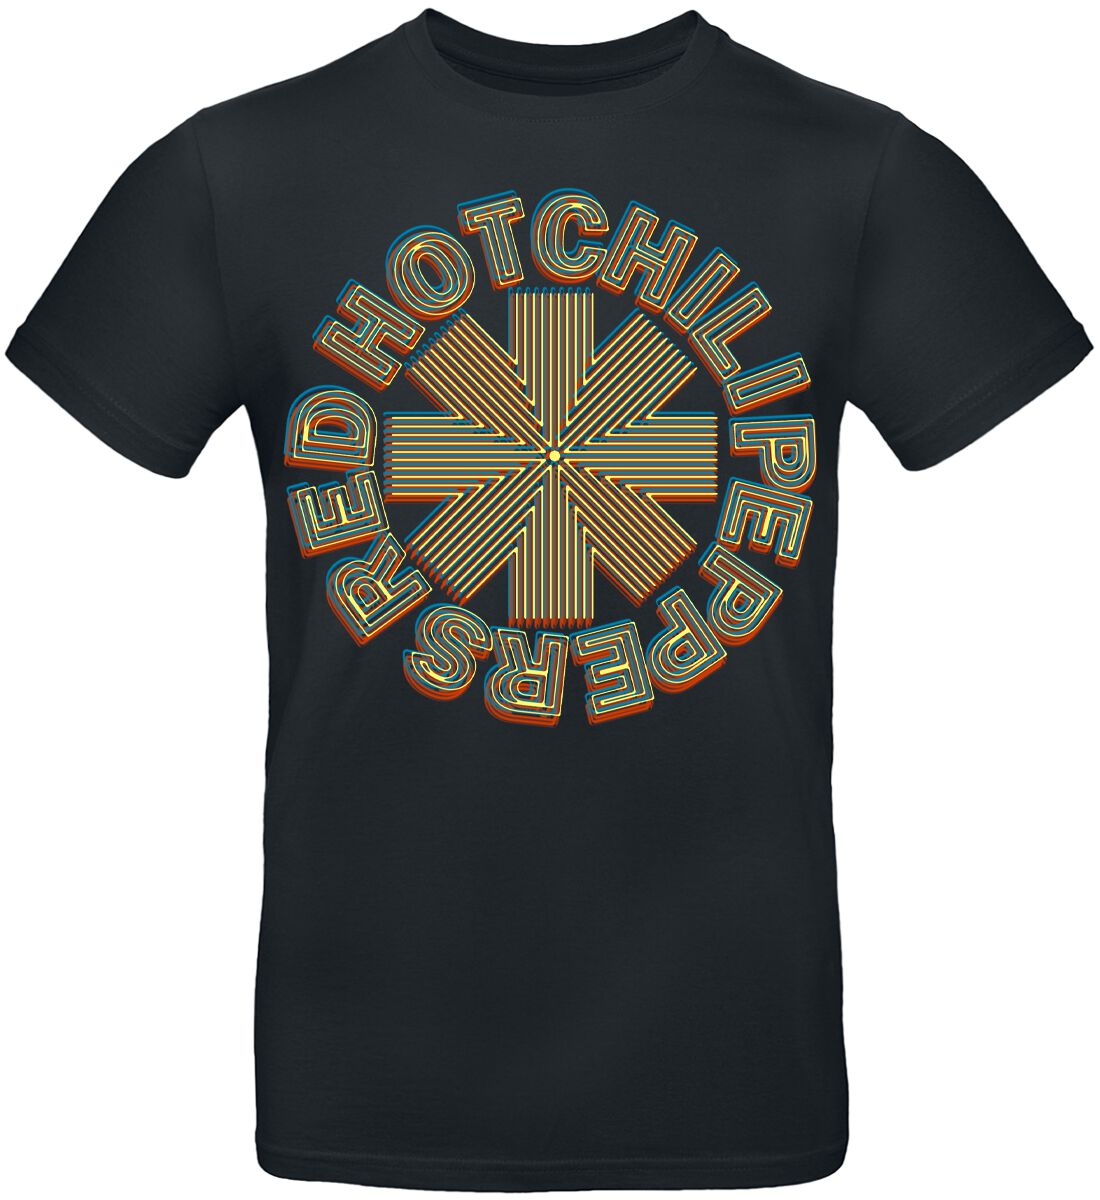 Red Hot Chili Peppers T-Shirt - Abstract Logo - S bis 3XL - für Männer - Größe XXL - schwarz  - Lizenziertes Merchandise!